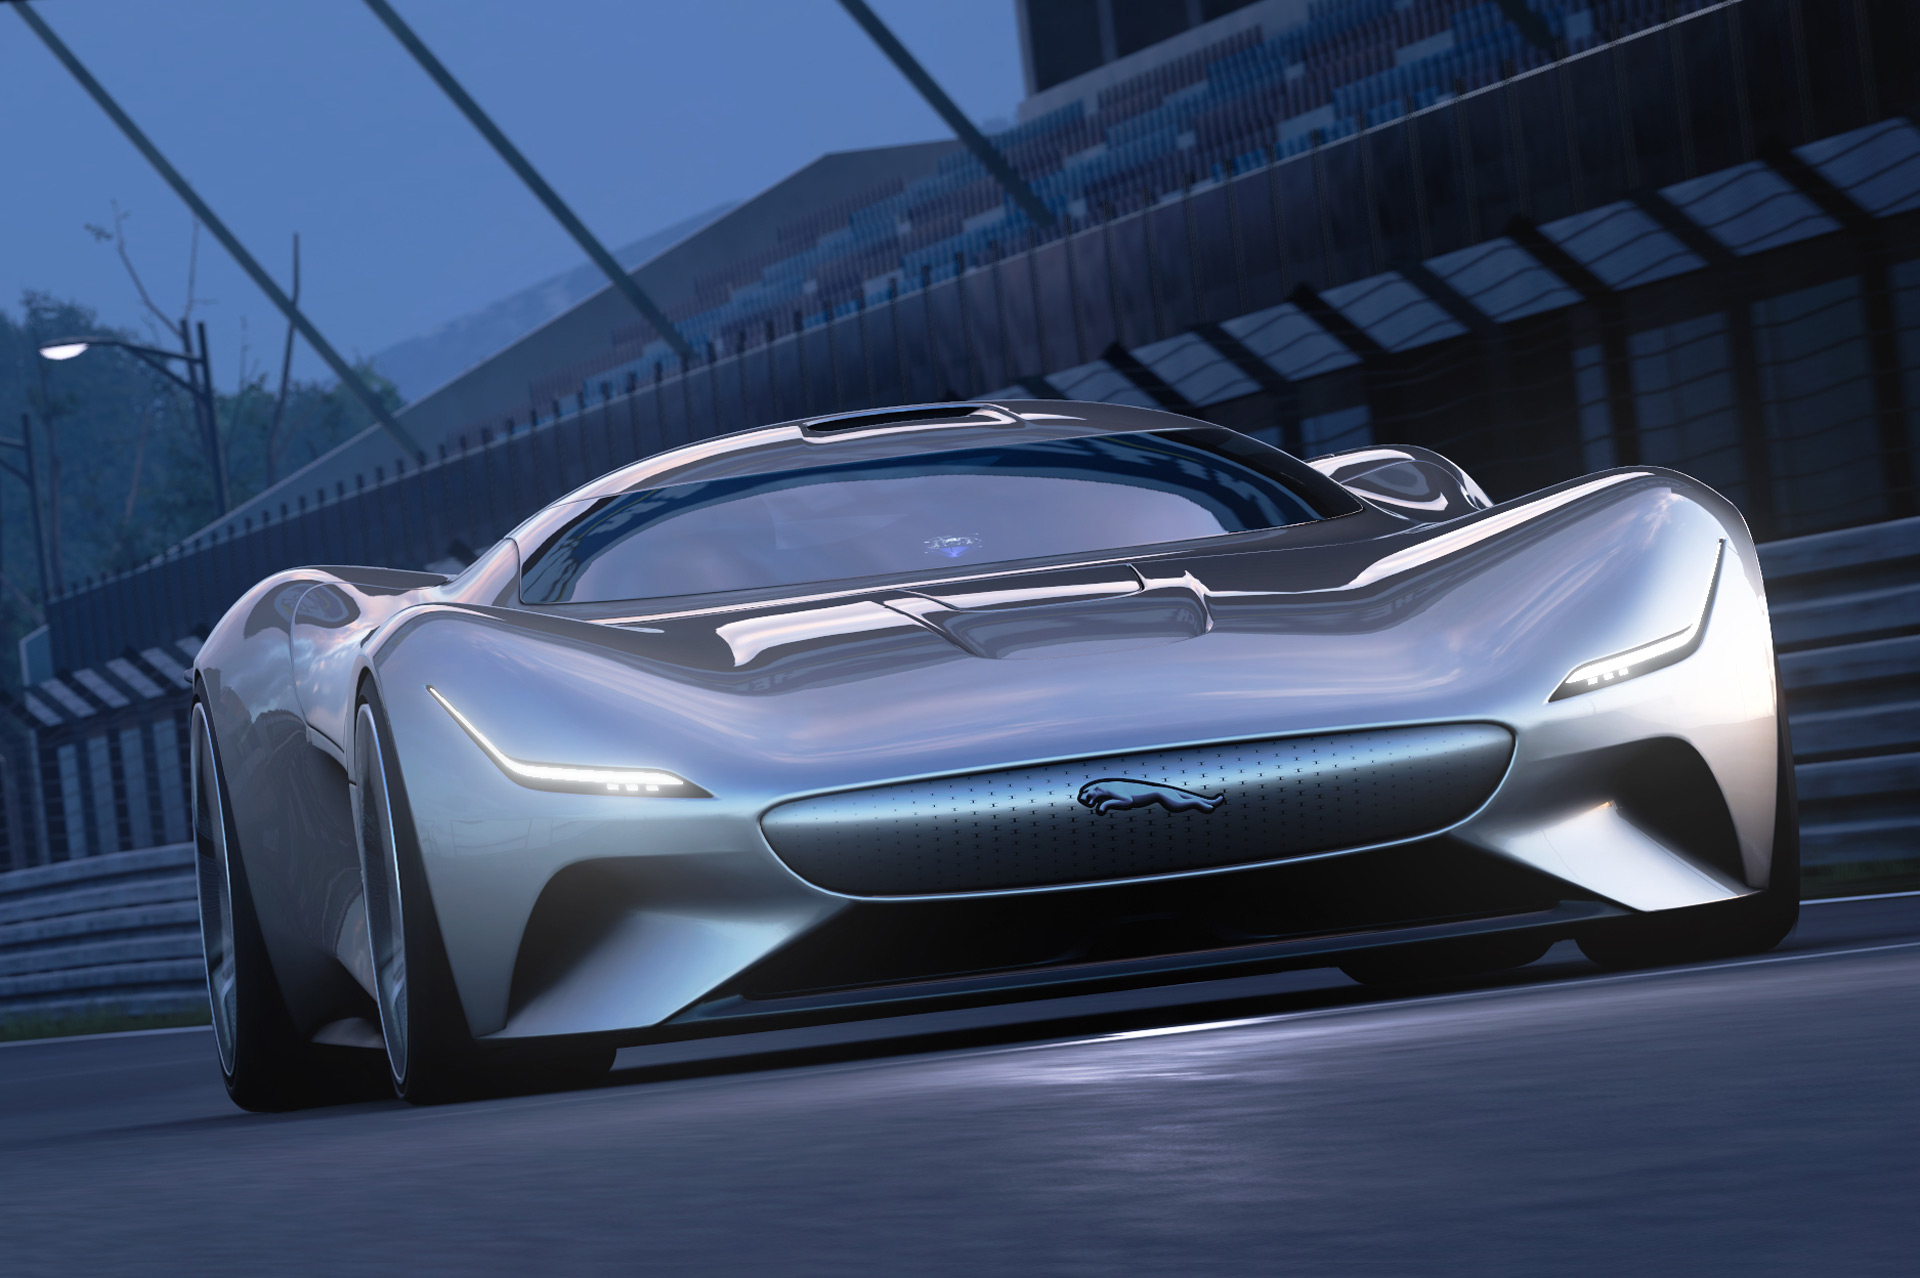 Jaguar unveils 1,005-horsepower electric supercar concept